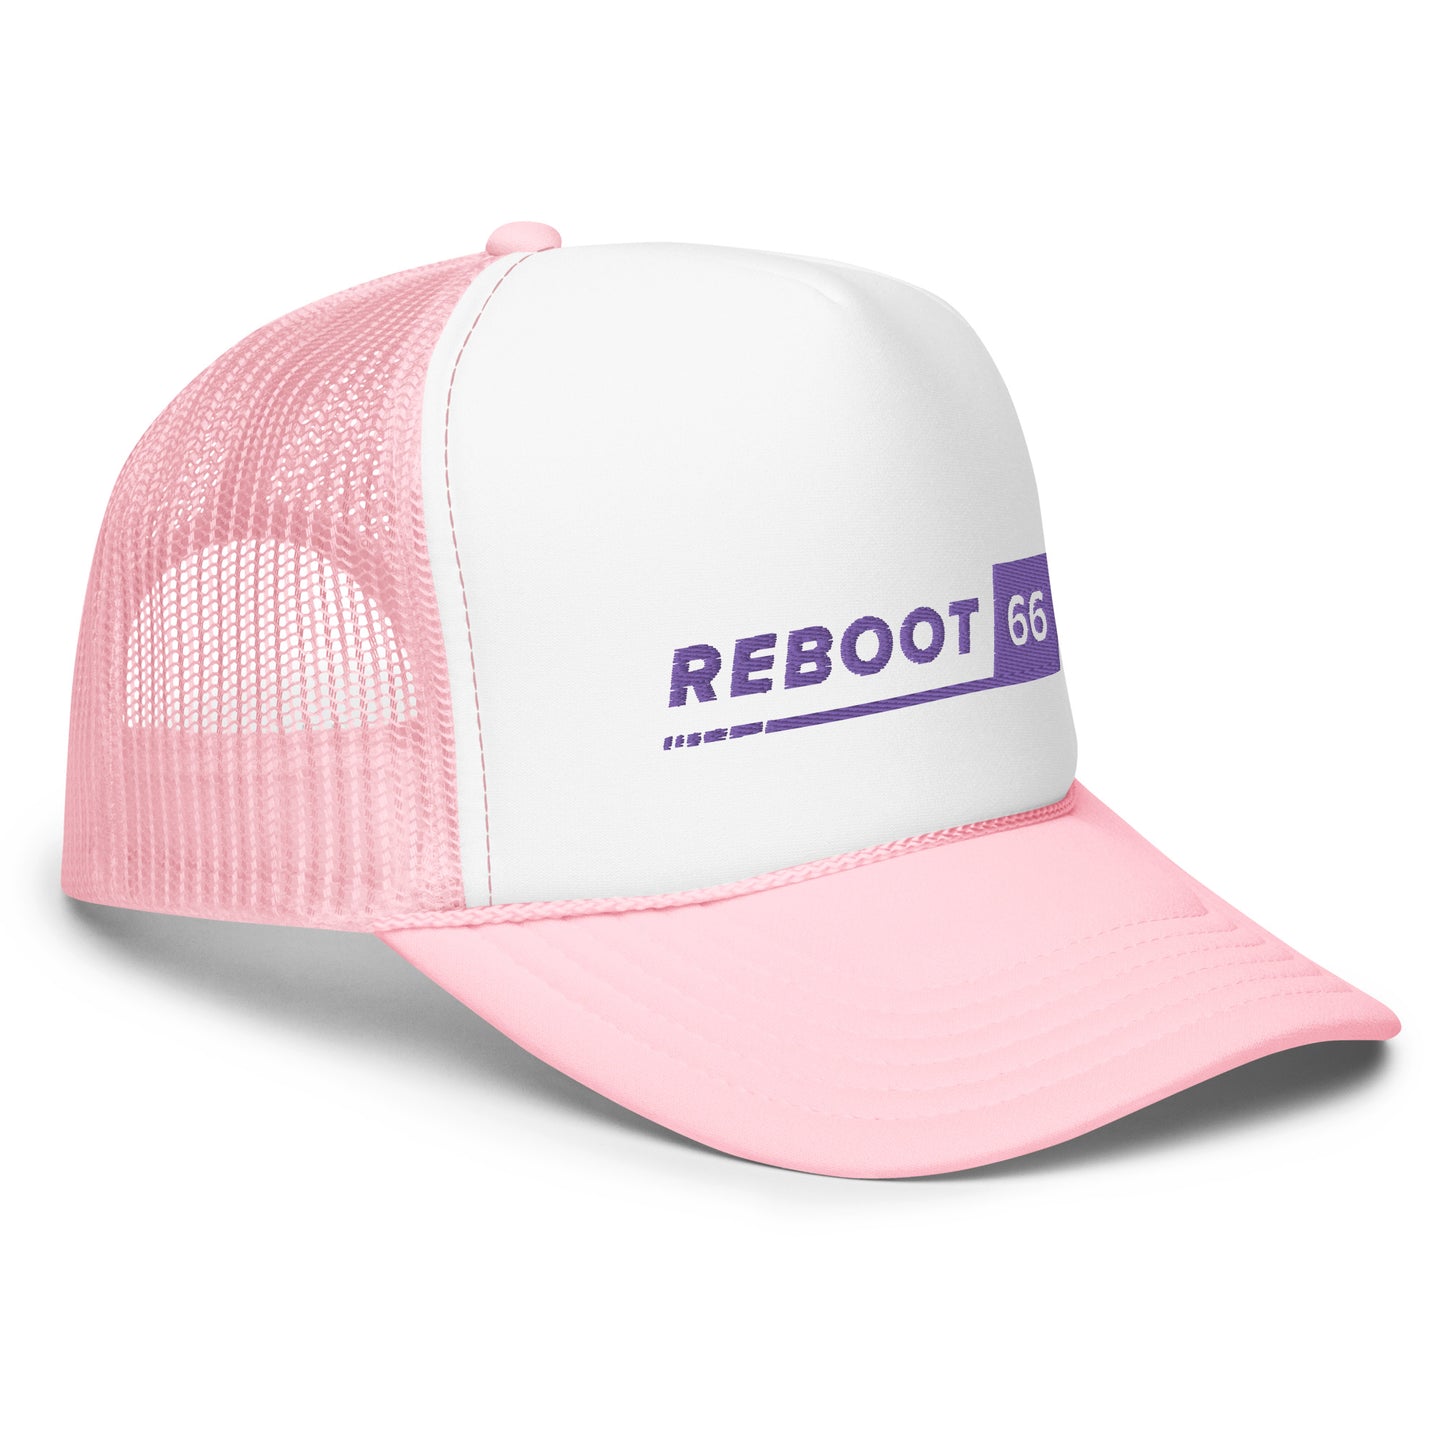 Reboot 66 - Foam trucker hat